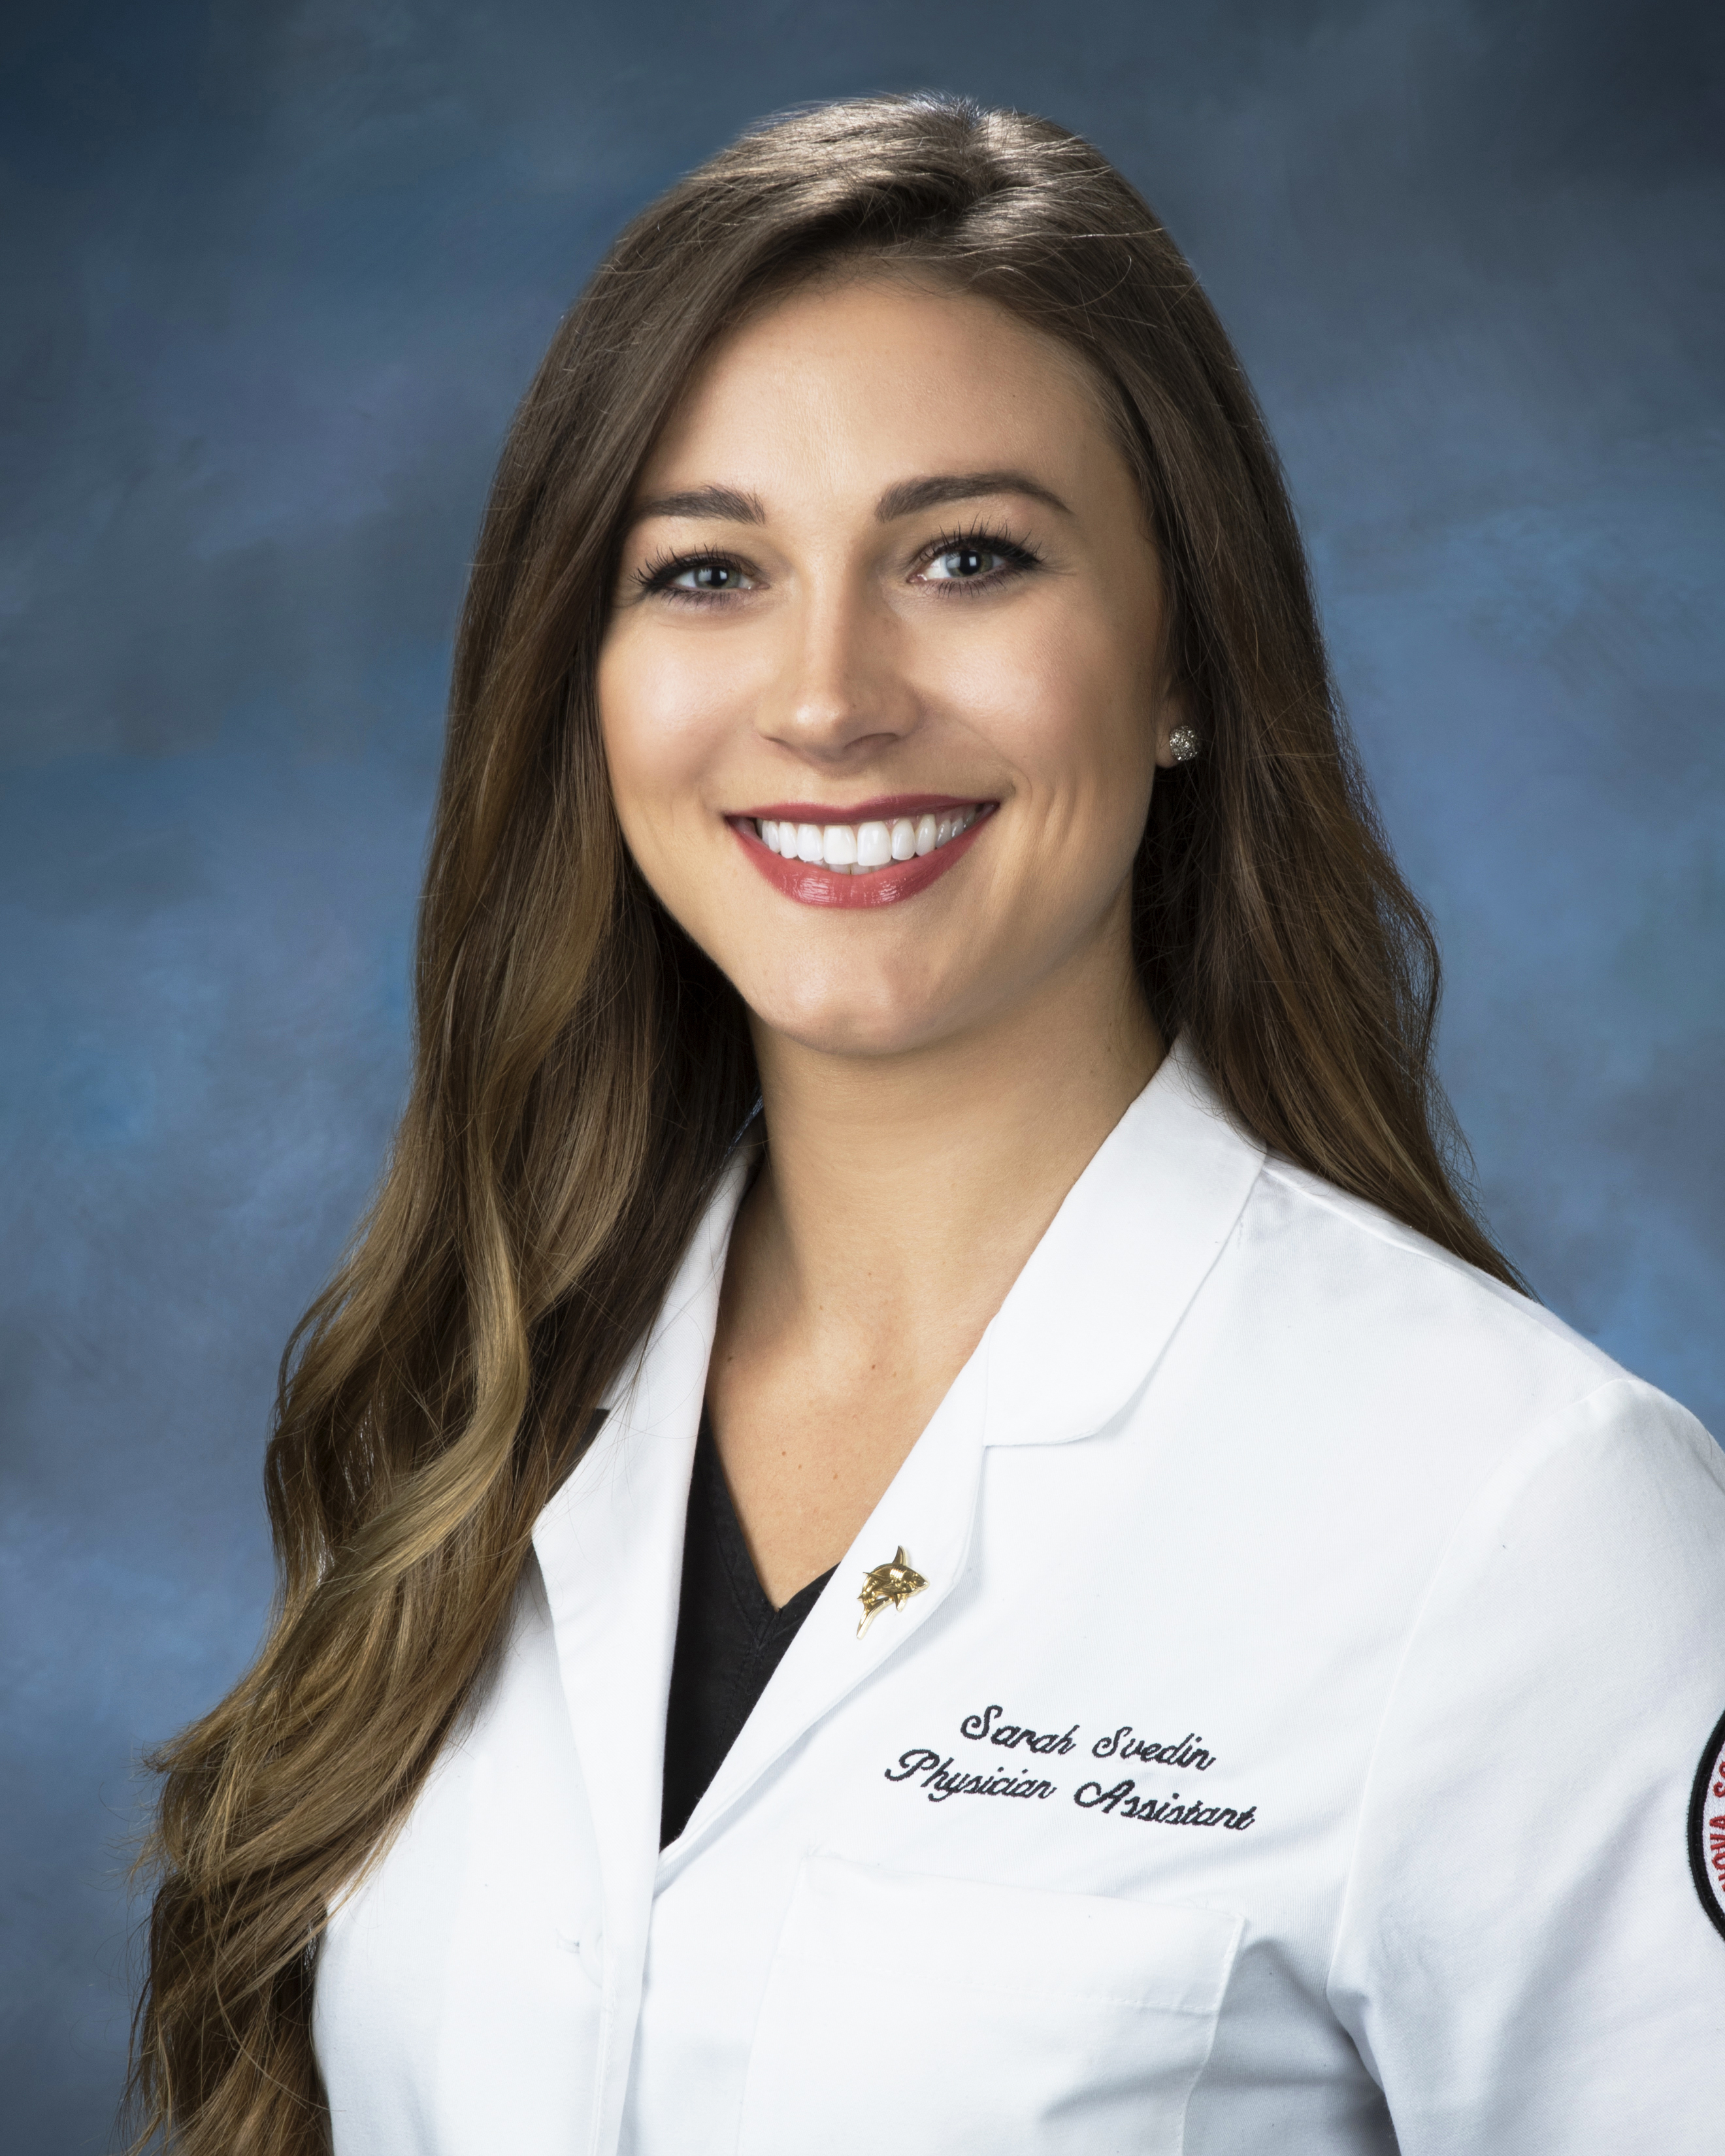 Sarah Svedin, Physician Assistant - Certified